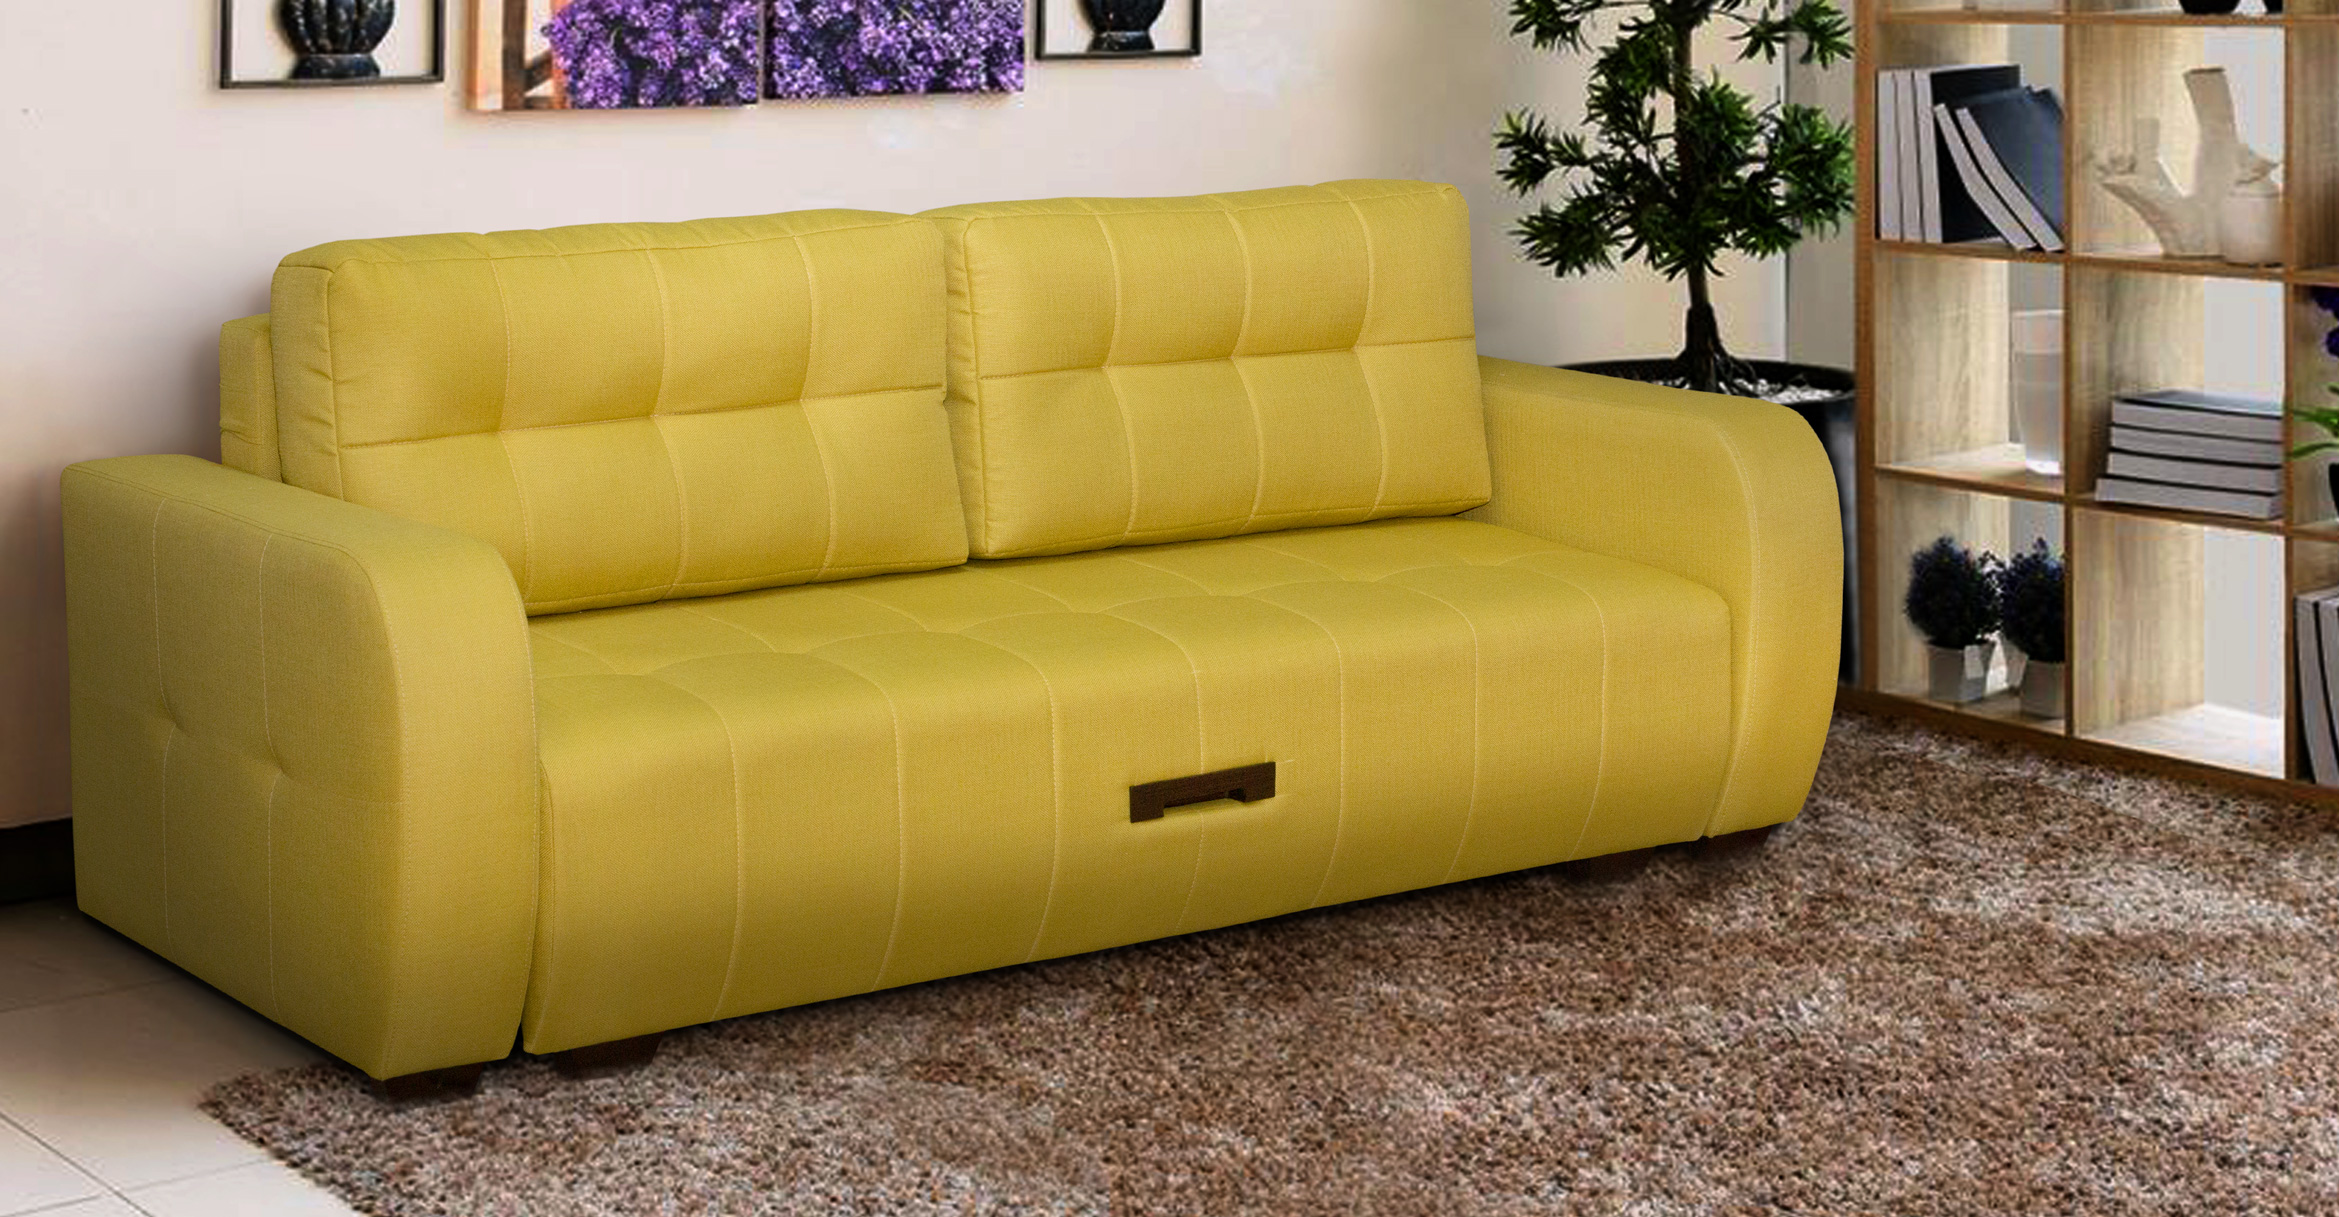 Желтый диван тик так в интерьере